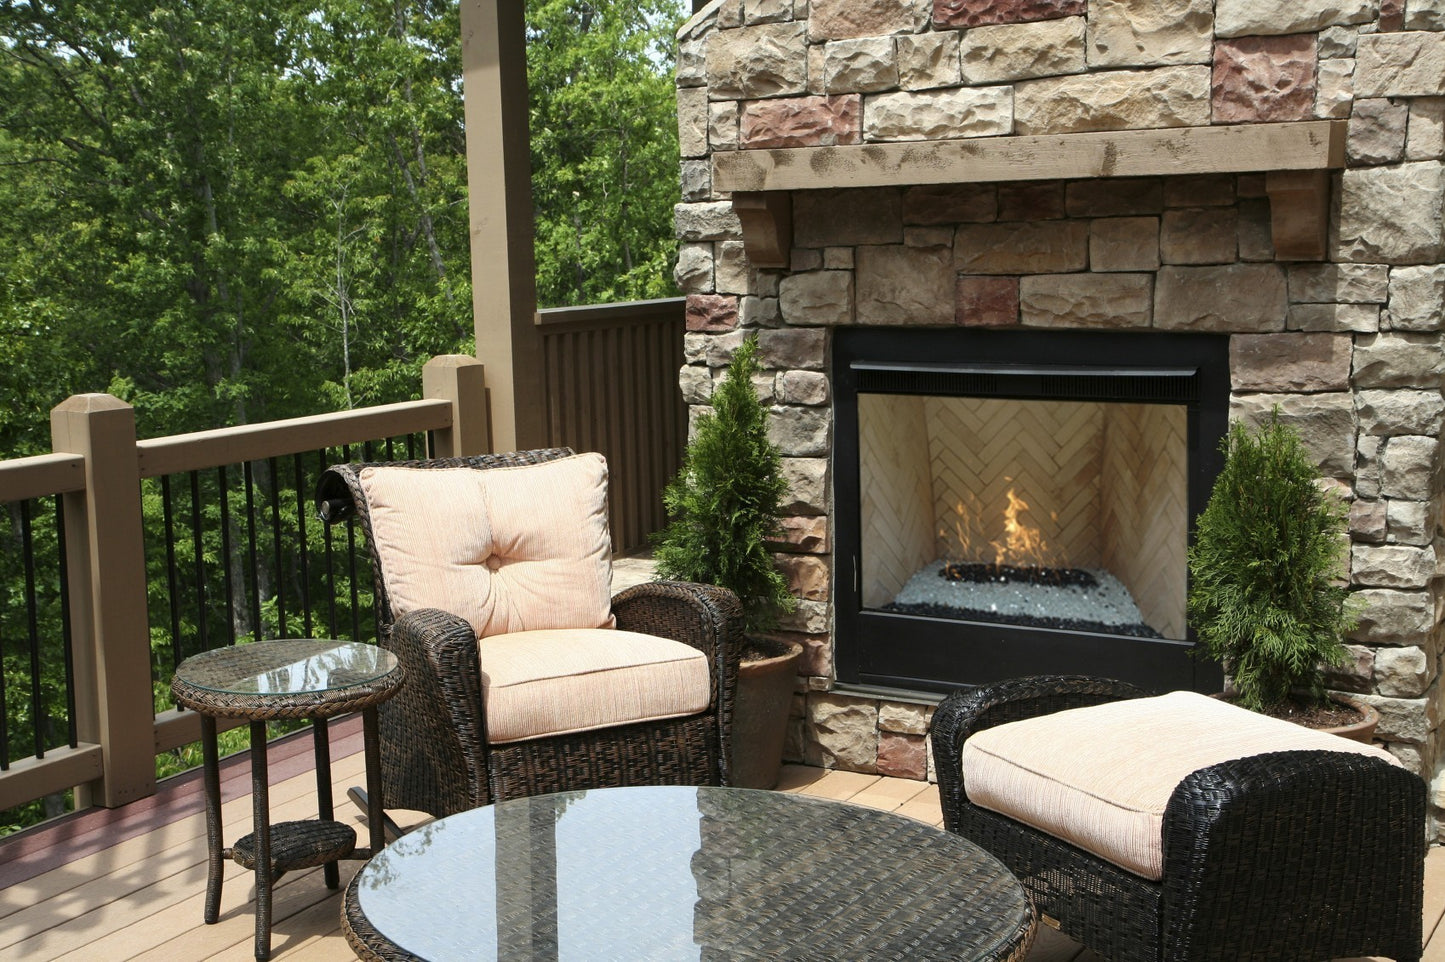 36" H Burner Fireplace & Fire Pit Burner (Indoor/Outdoor)